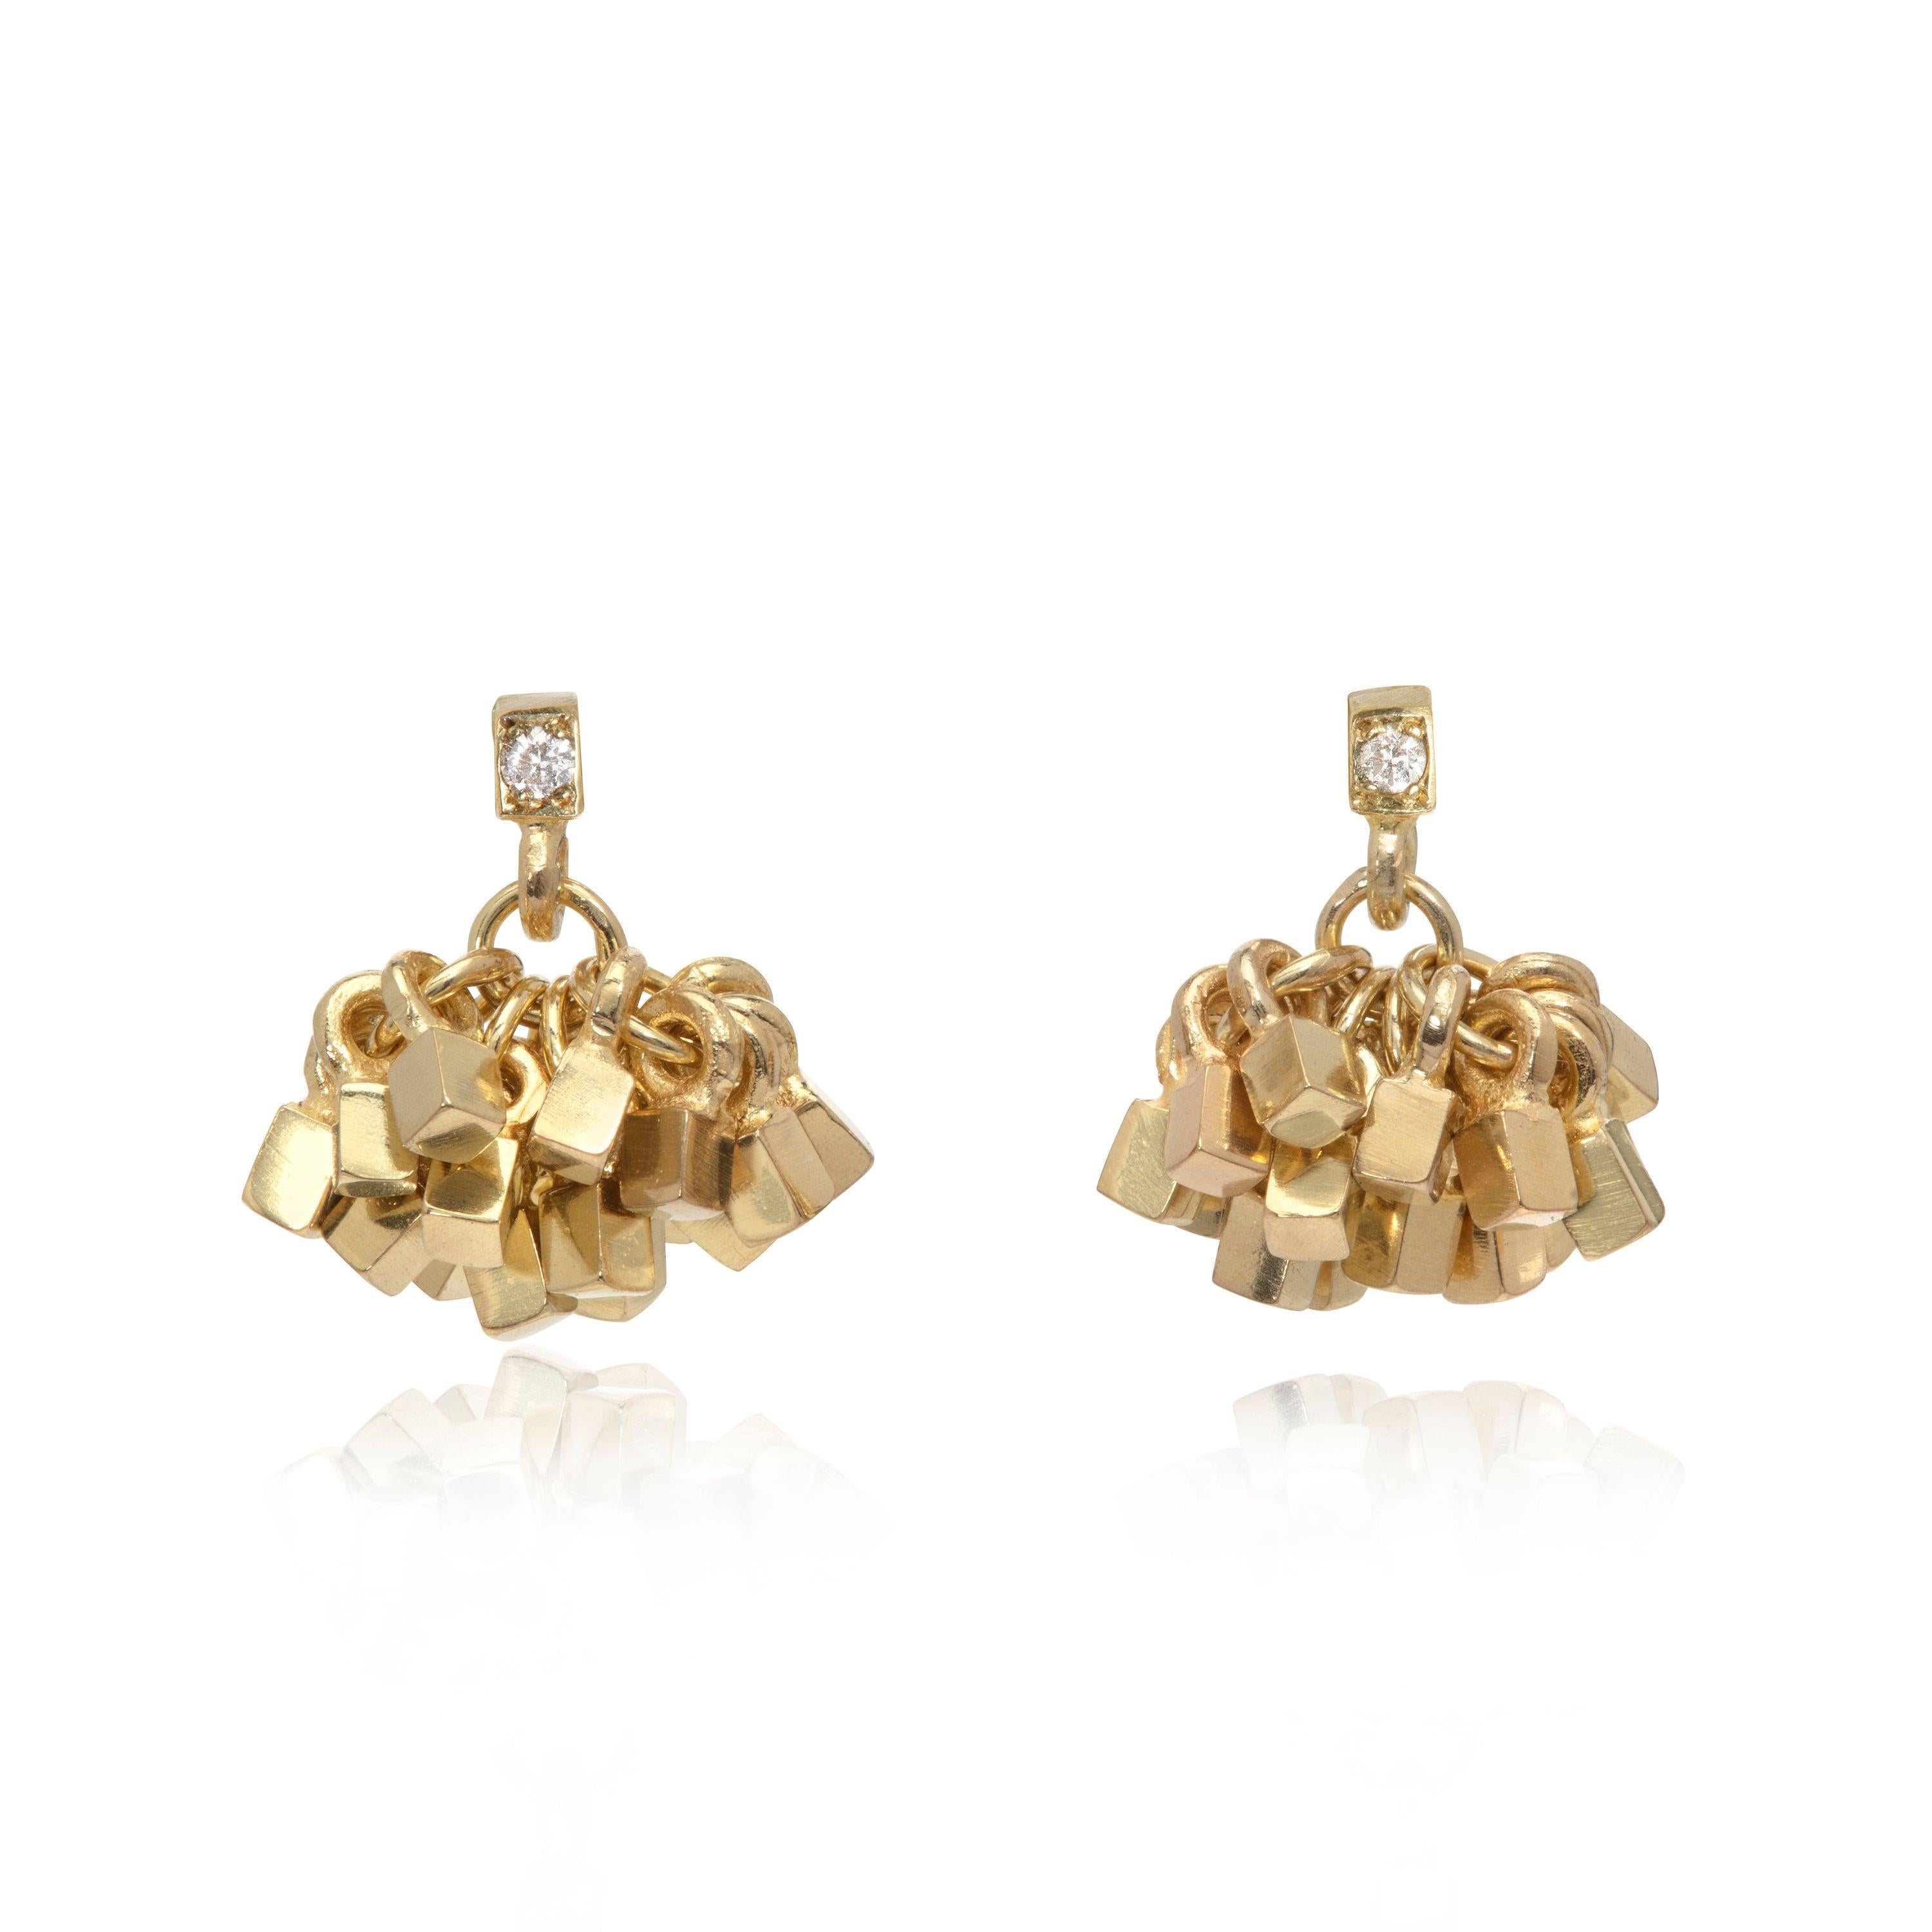 Ces boucles d'oreilles élégantes et frappantes en or 18 carats sont conçues et fabriquées par la bijoutière britannique Sarah Pulvertaft. Sous le sommet carré accentué de diamants se trouve une grappe de mini-cubes individuels en forme de houppe.